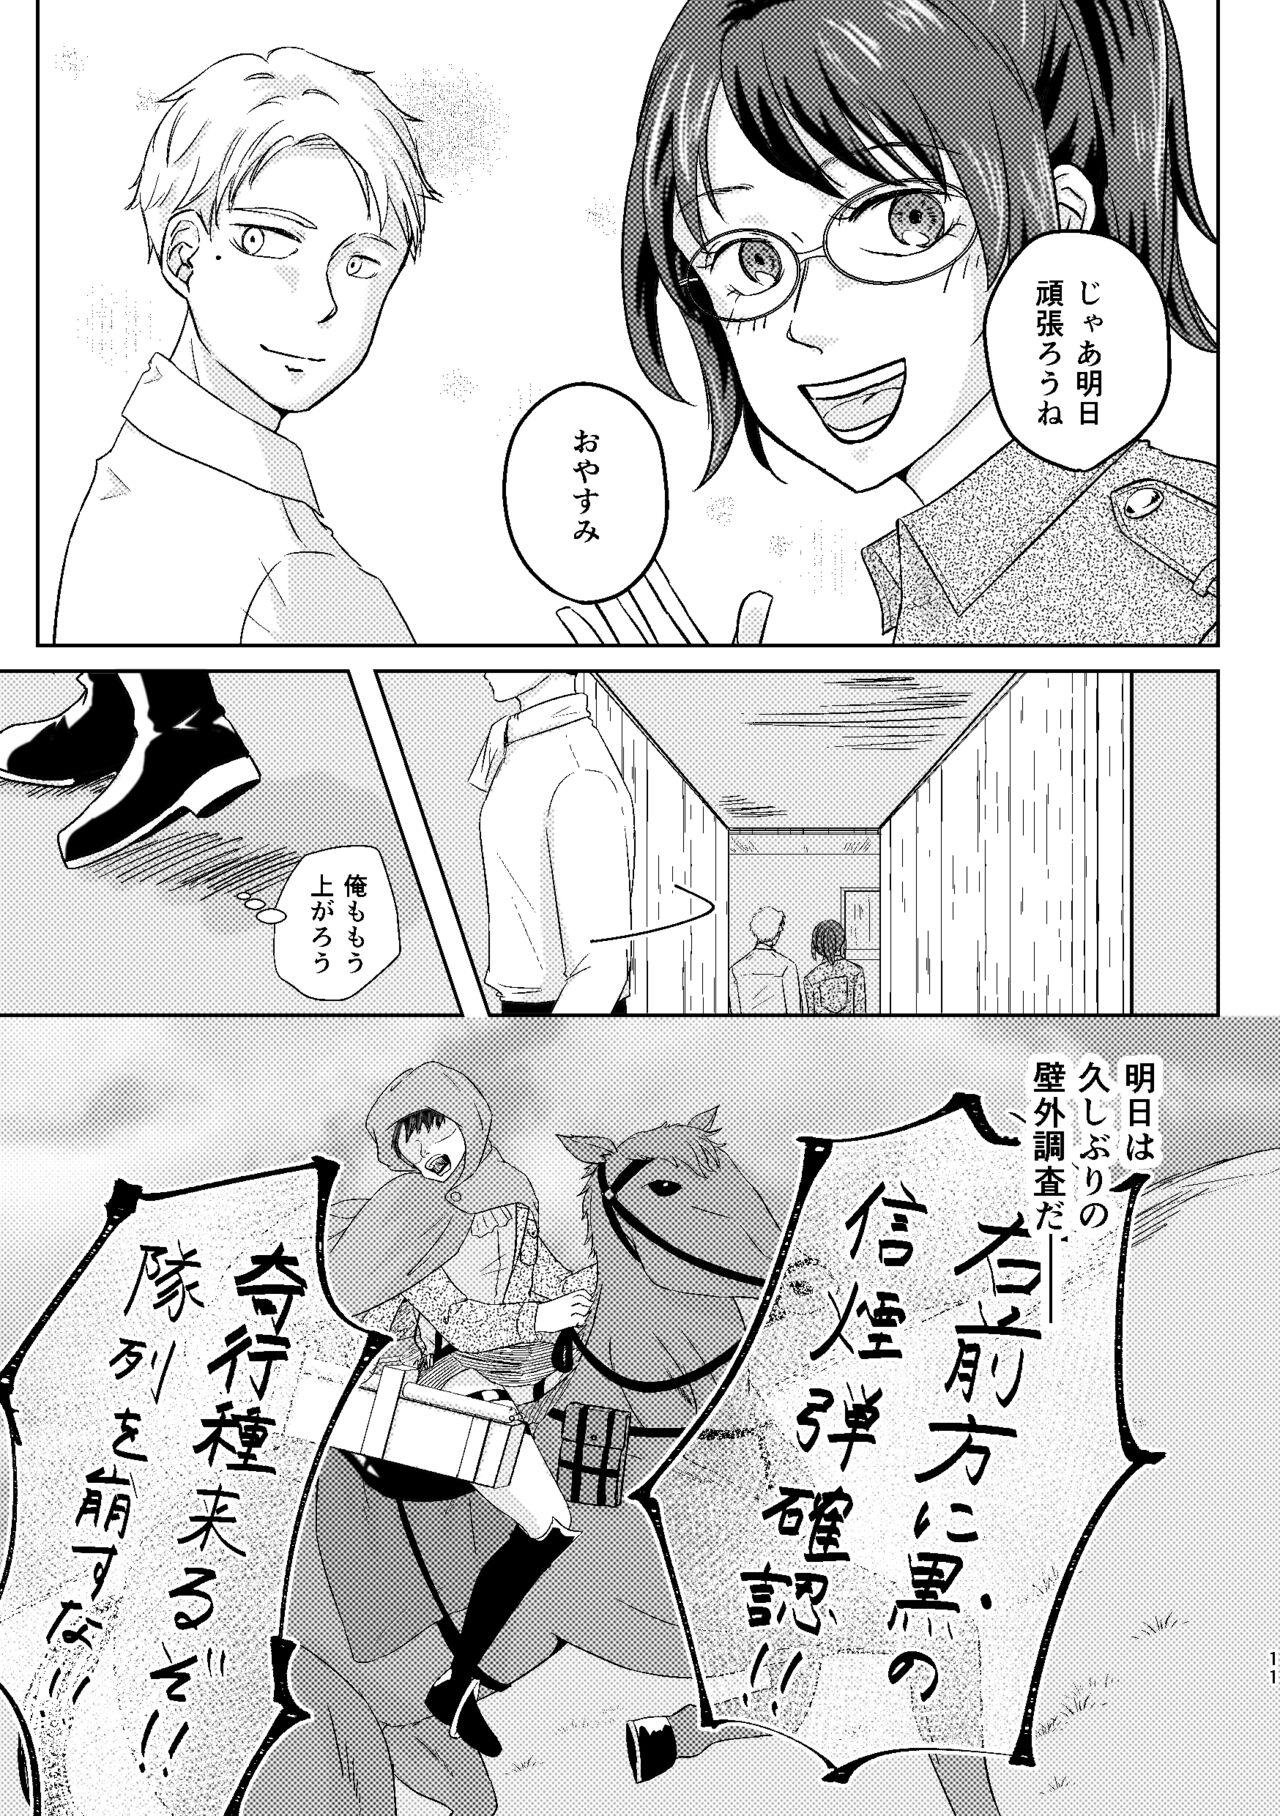 Amatur Porn Yoru wa Yasashii - Shingeki no kyojin | attack on titan Worship - Page 11